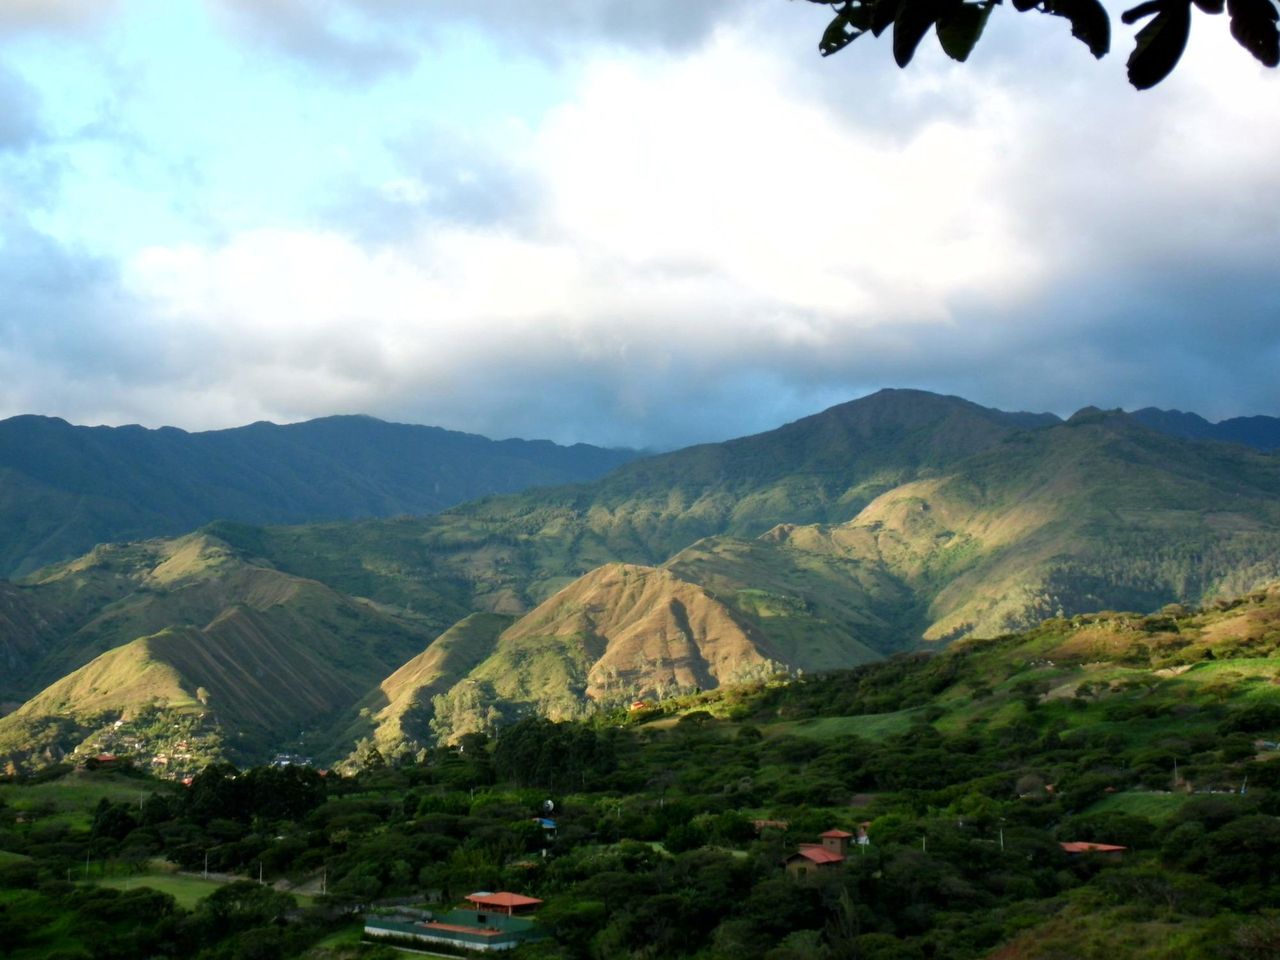 Découvrir la jeunesse éternelle : explorer la vallée de Vilcabamba en Équateur.